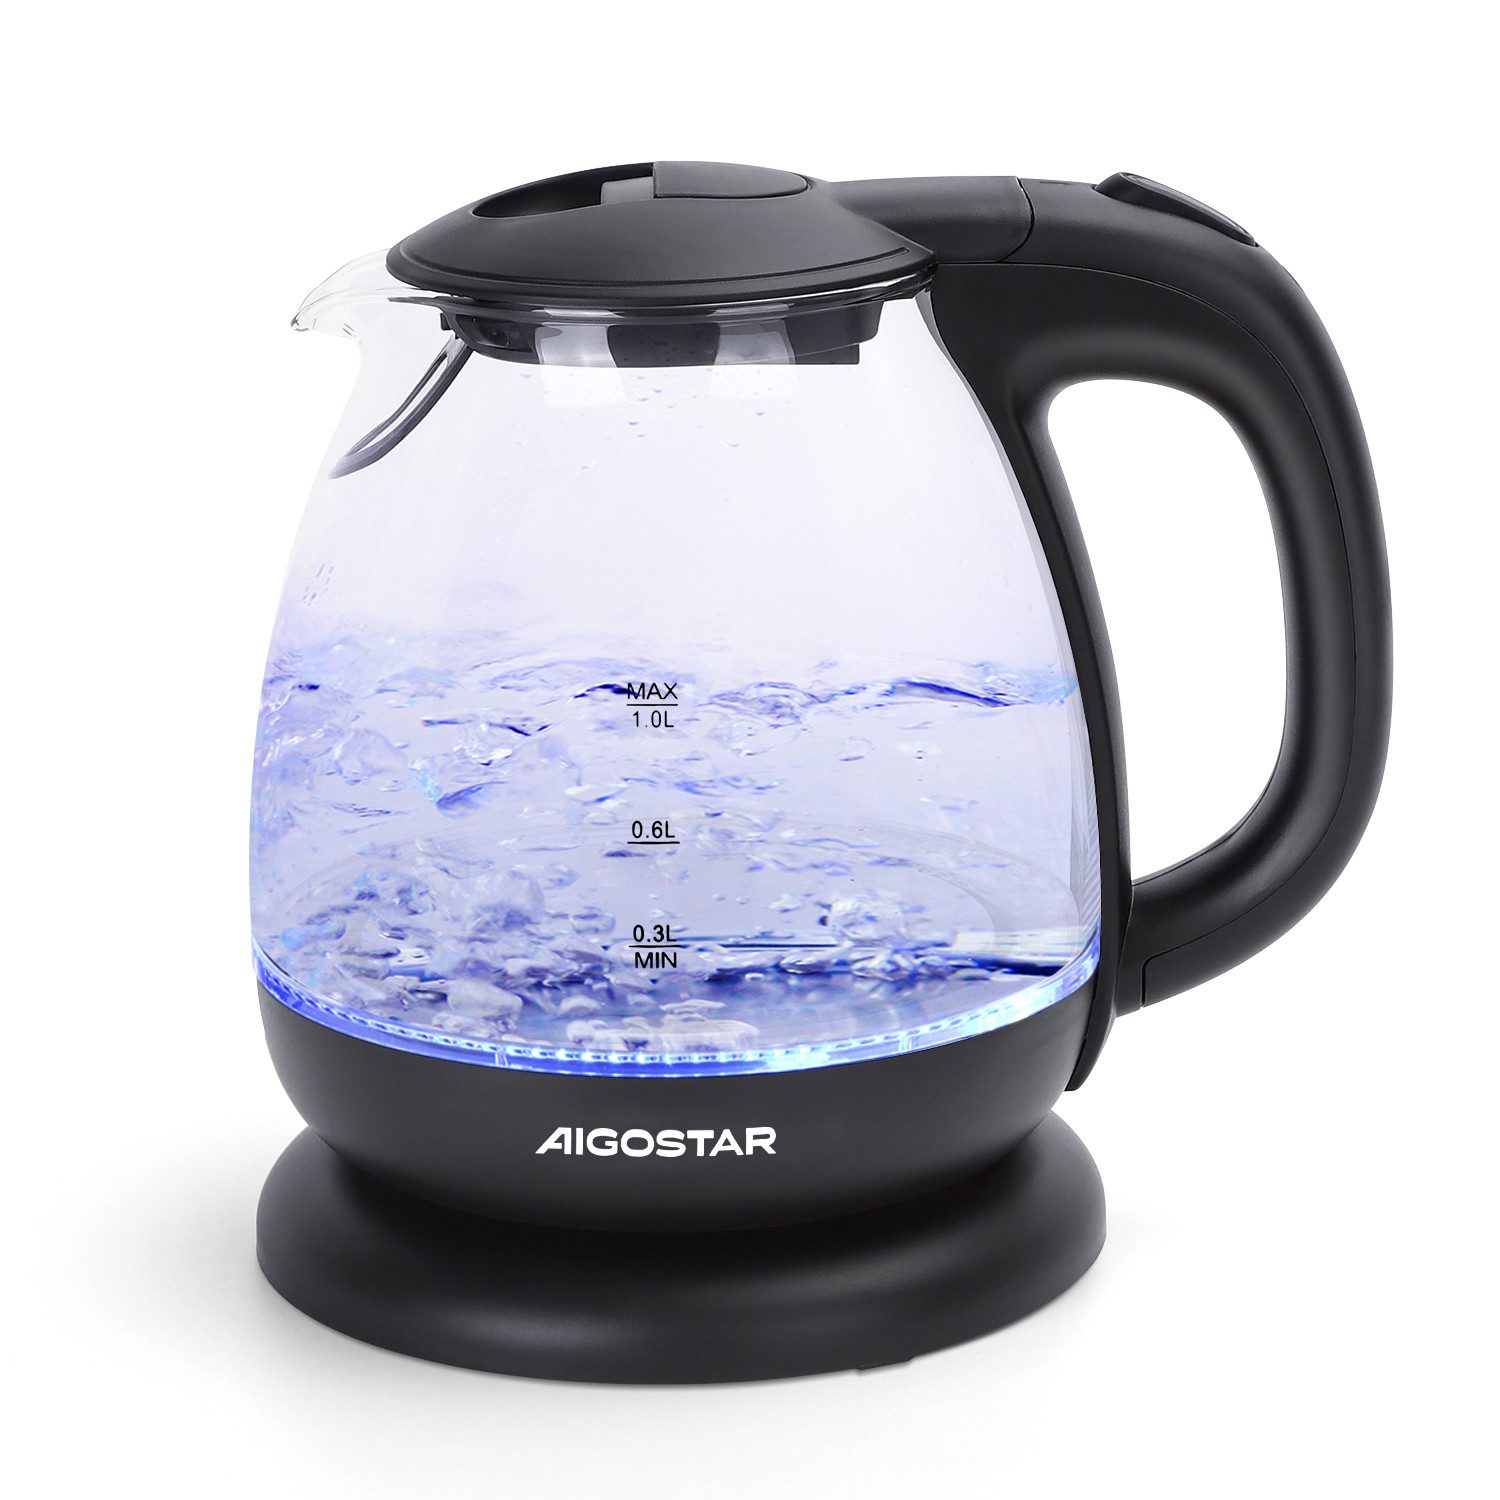 Aigostar Wasserkocher Kleiner wasserkocher glas mit led-beleuchtung, 1 Liter, 2200W